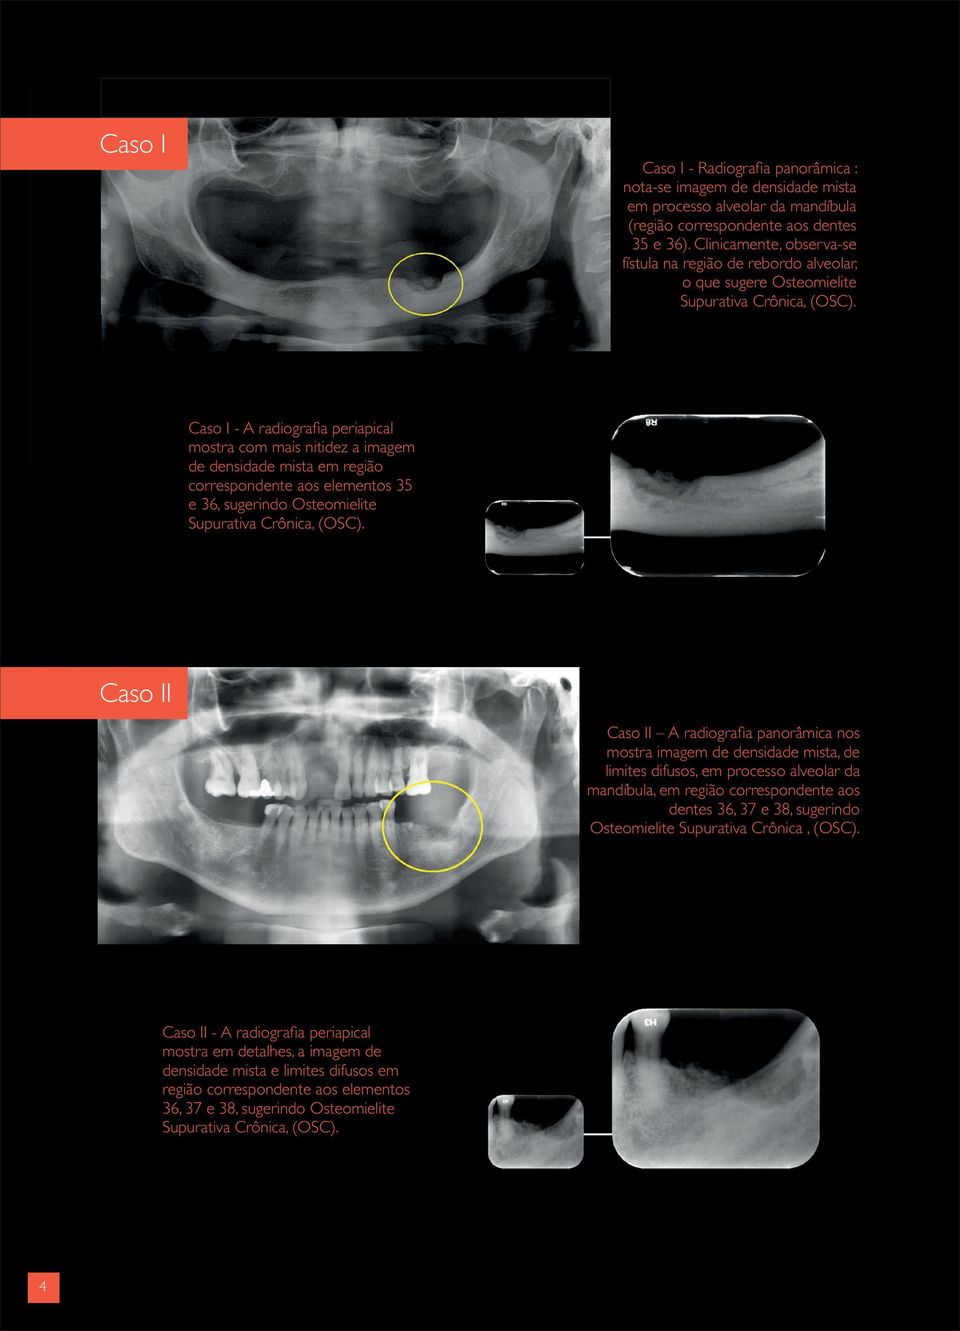 Caso I - A radiografia periapical mostra com mais nitidez a imagem de densidade mista em região correspondente aos elementos 35 e 36, sugerindo Osteomielite Supurativa Crônica, (OSC).